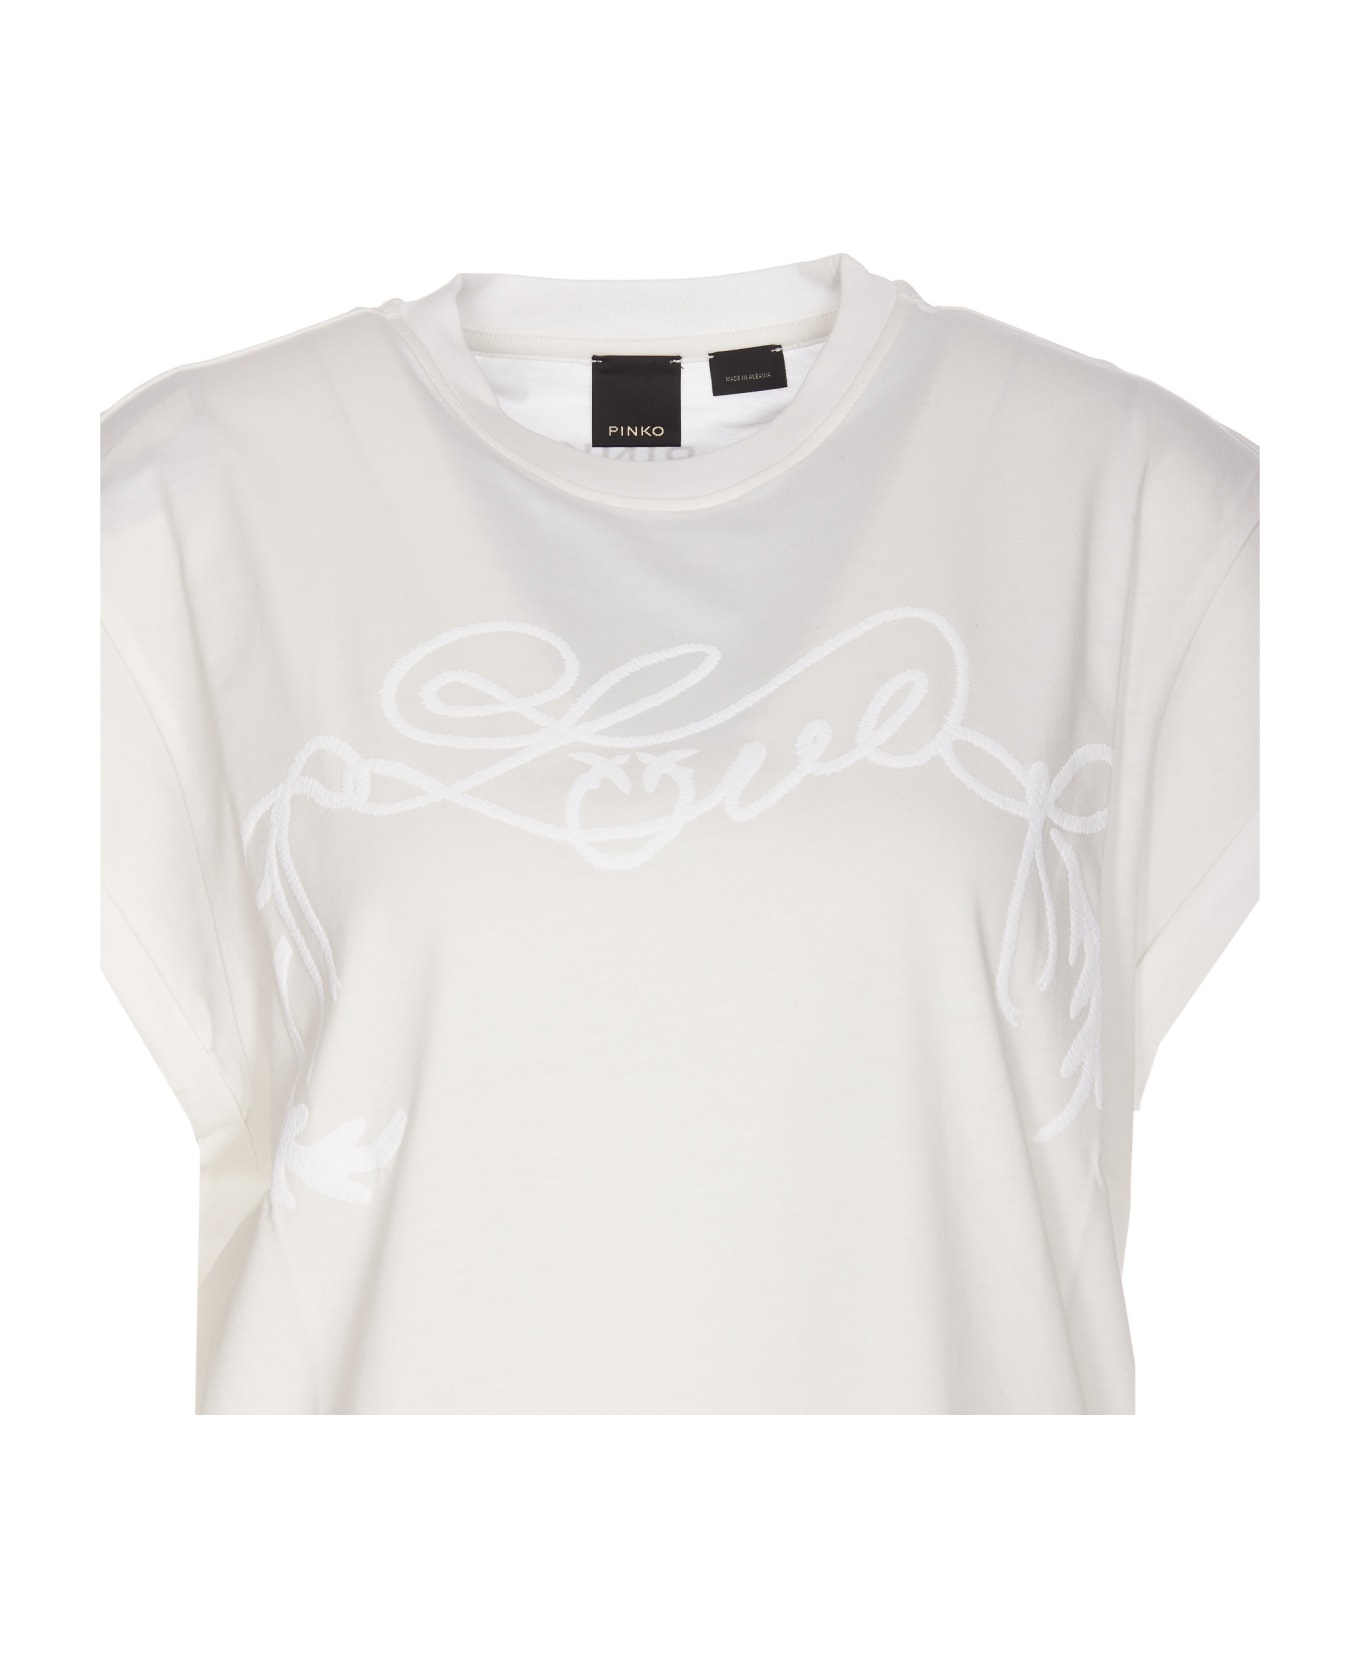 Pinko Telesto T-shirt - Bianco Tシャツ